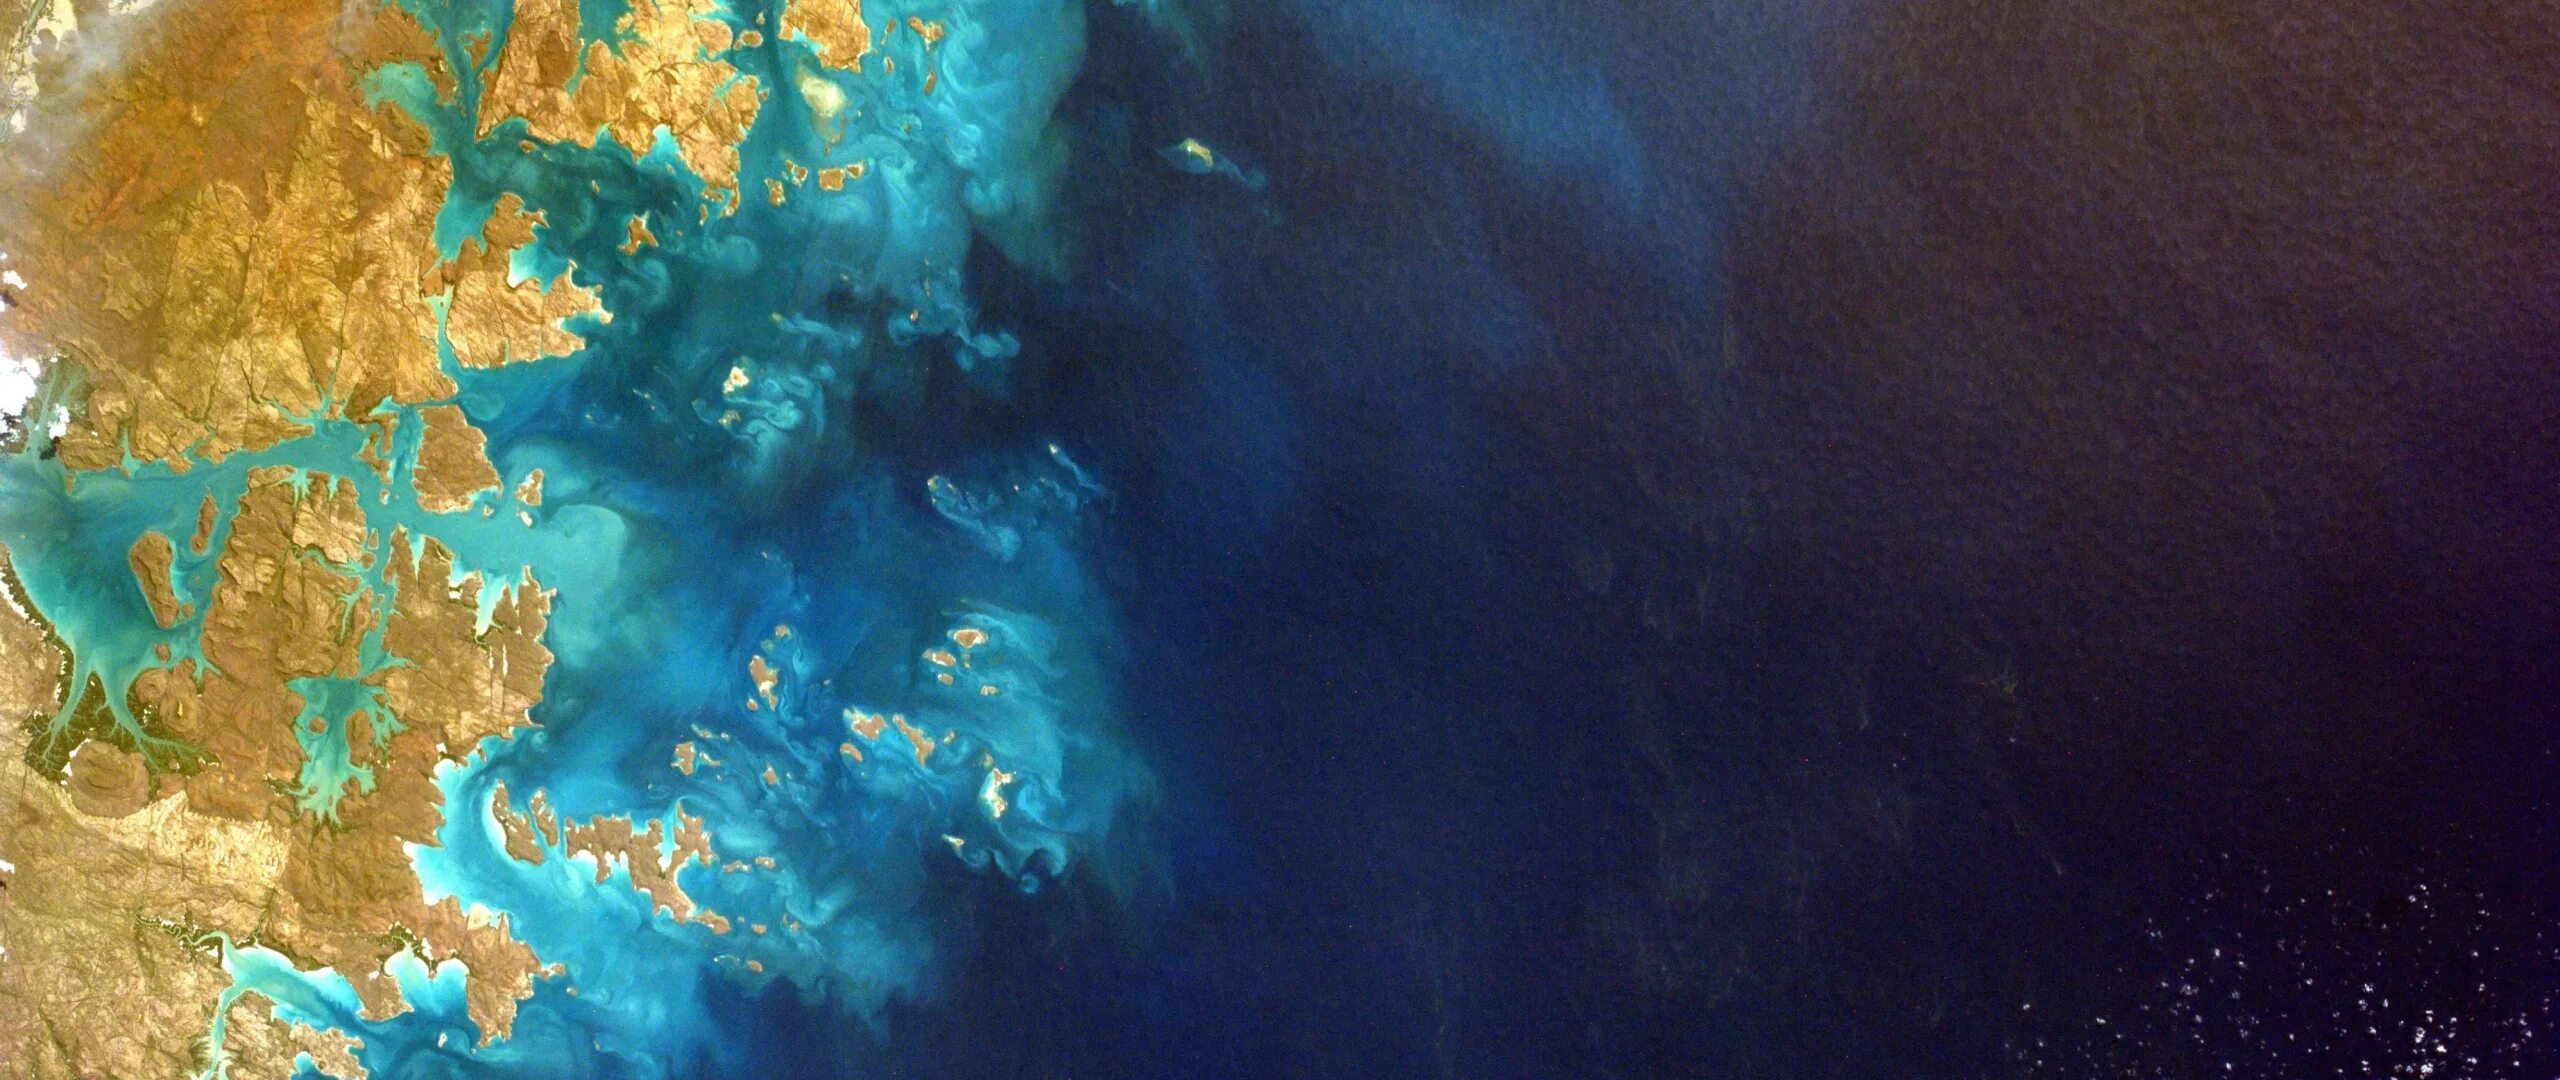 Ад в тихом океане. Мировой океан из космоса. Индийский океан с космоса. Океан вид из космоса. Jrtfzs BP rjcvjcf.